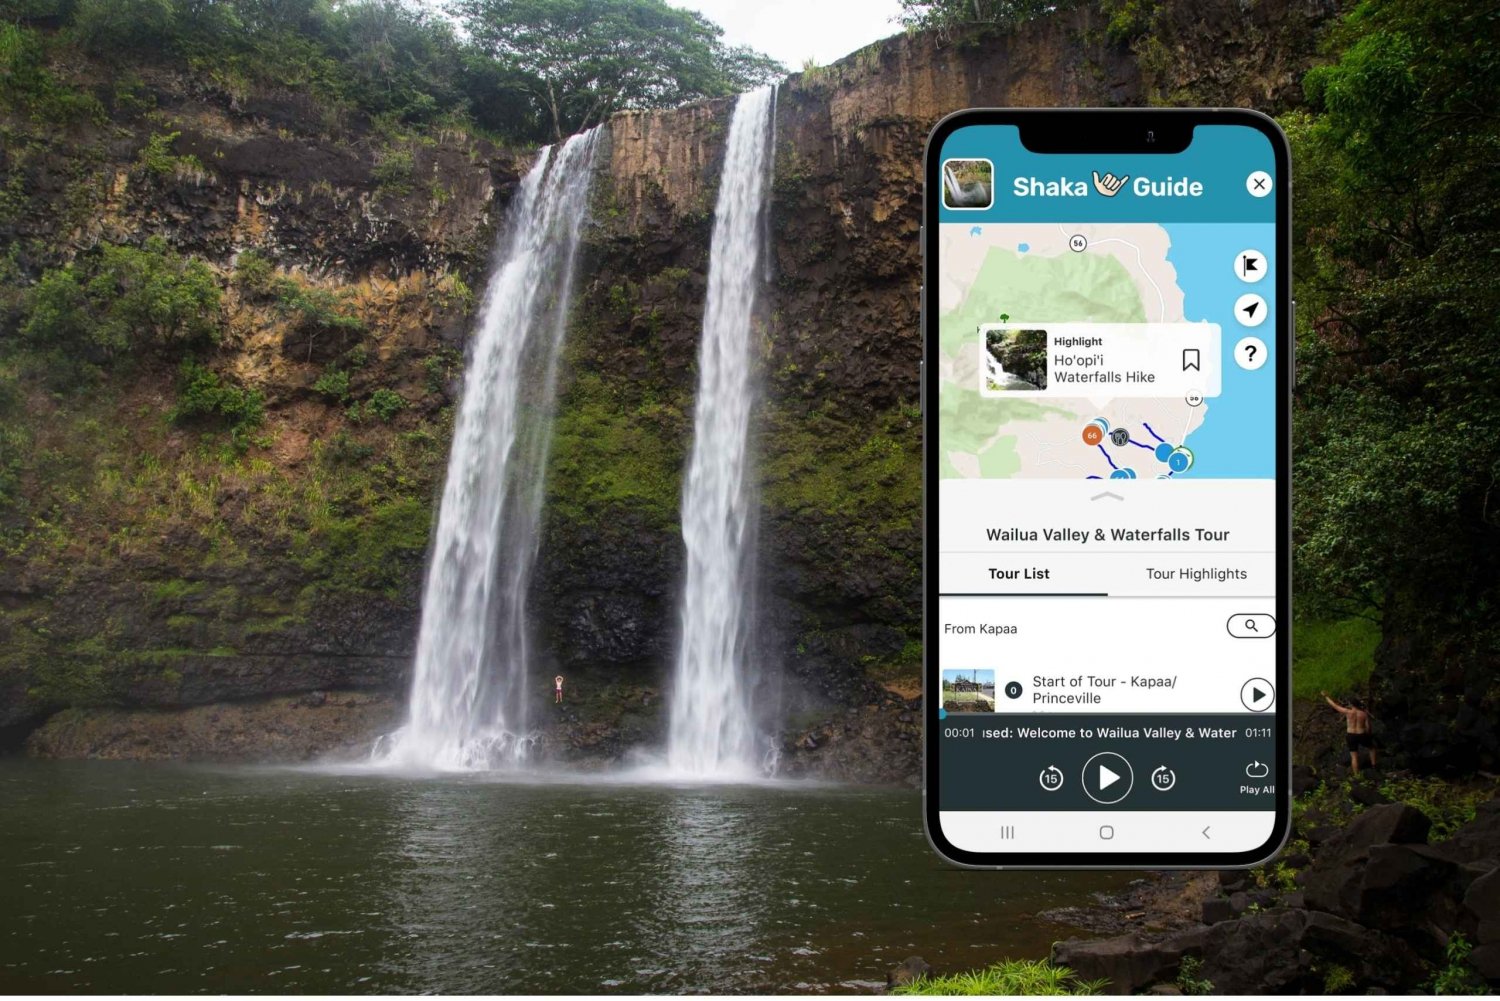 Vale de Wailua e cachoeiras em Kauai: Guia de Turismo em Áudio